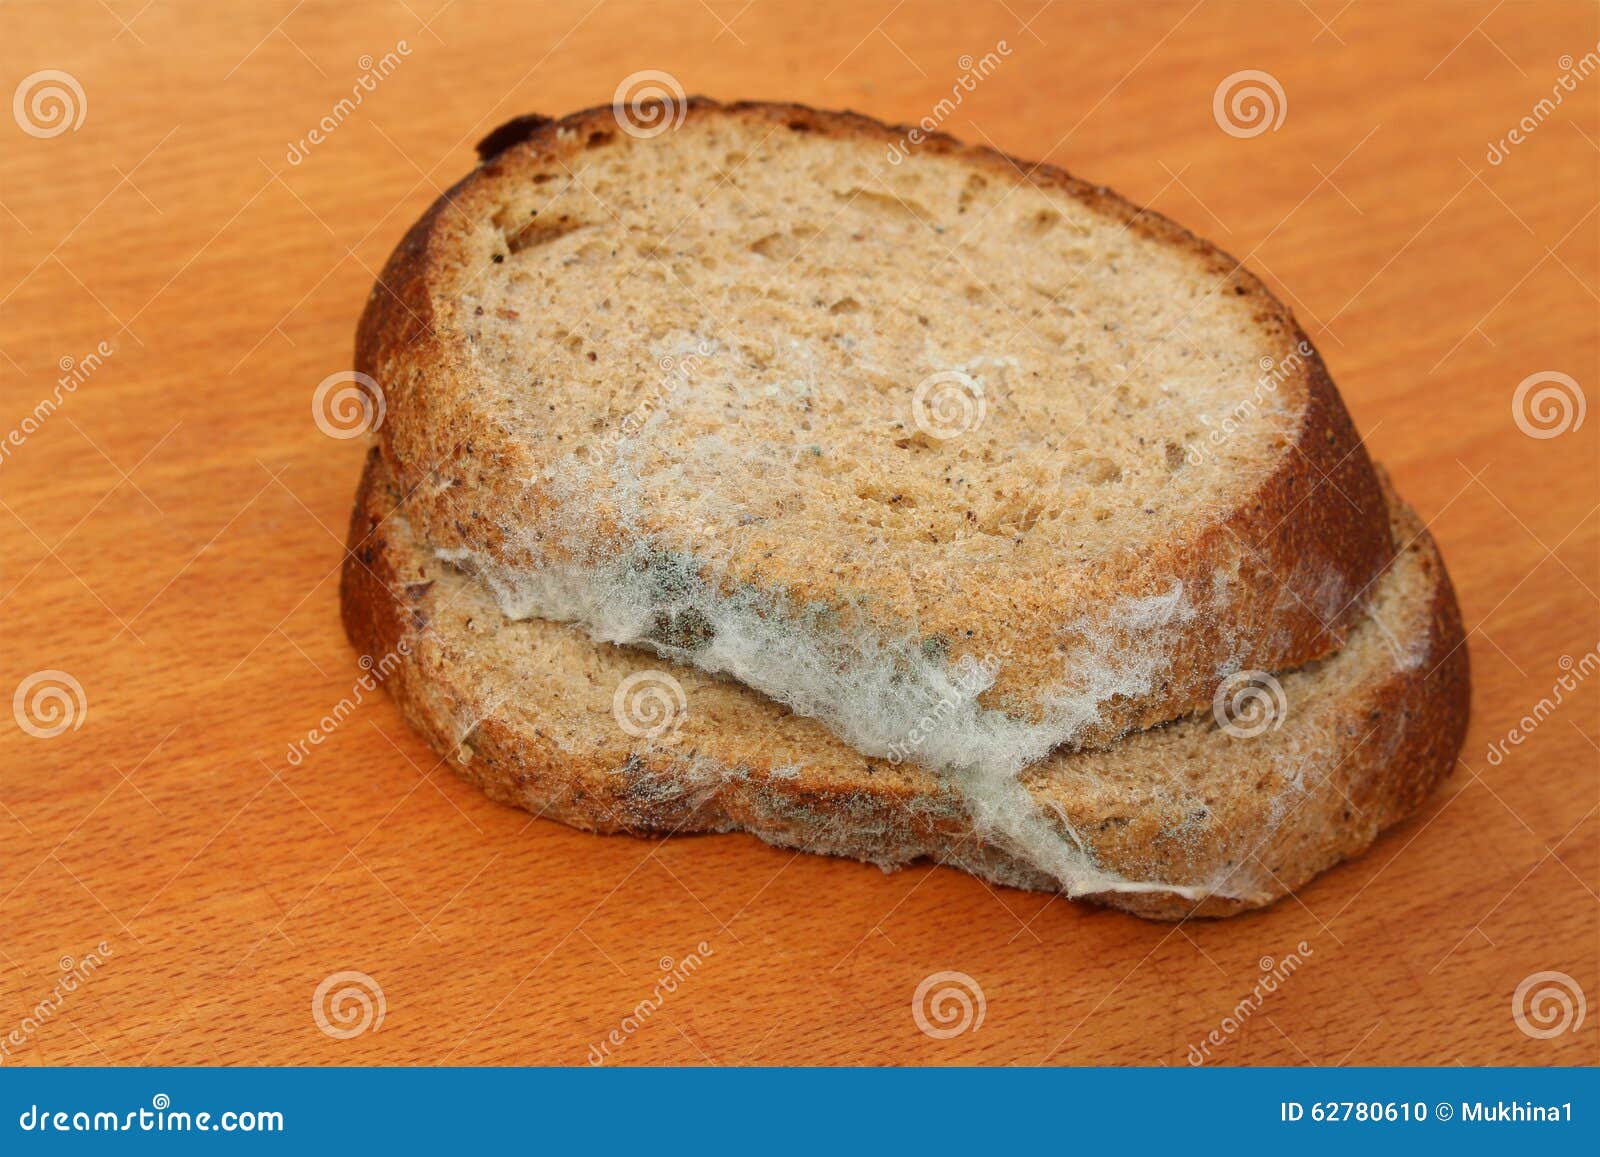 Кусочек хлеба с плесенью. Белая плесень на хлебе. Плесень на кусочке хлеба. Черная плесень на хлебе. Плесень на белом куске хлеба.